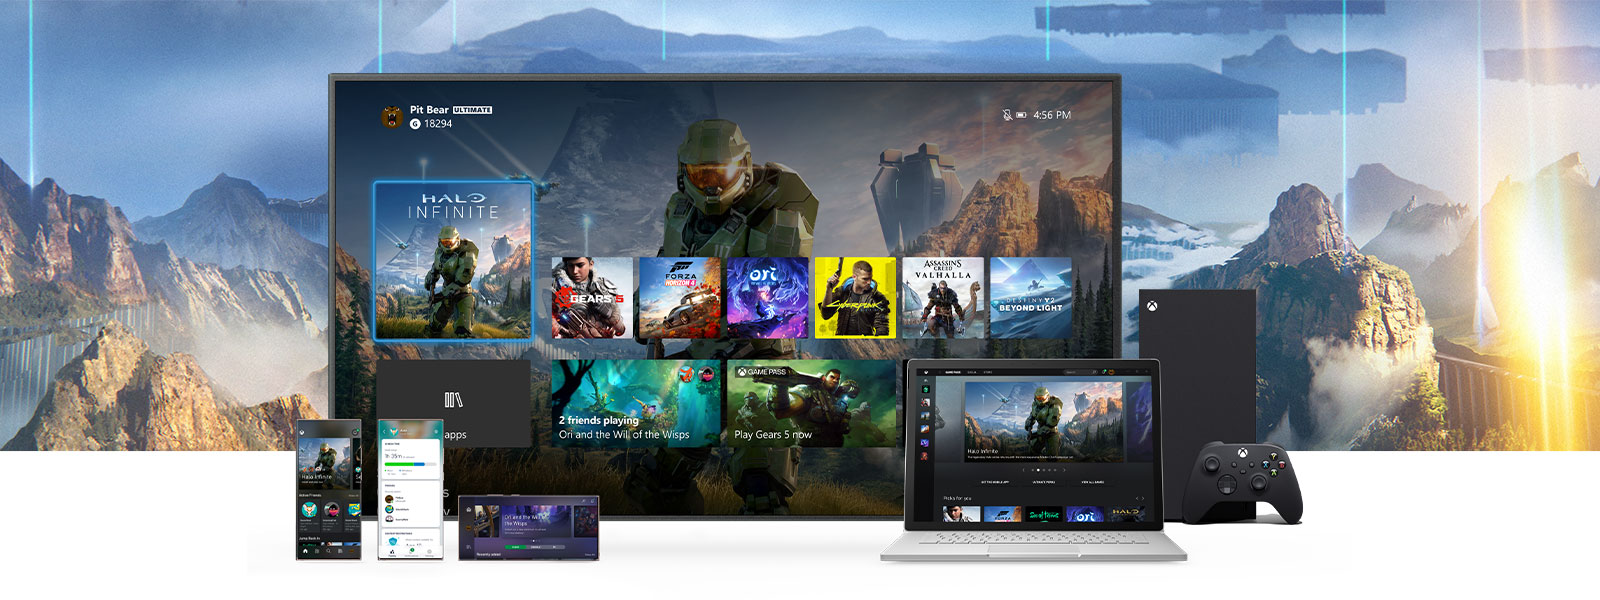 電視顯示 Xbox 設定畫面，旁邊是 Xbox Series X。電腦和行動裝置等其他裝置放在電視前方。